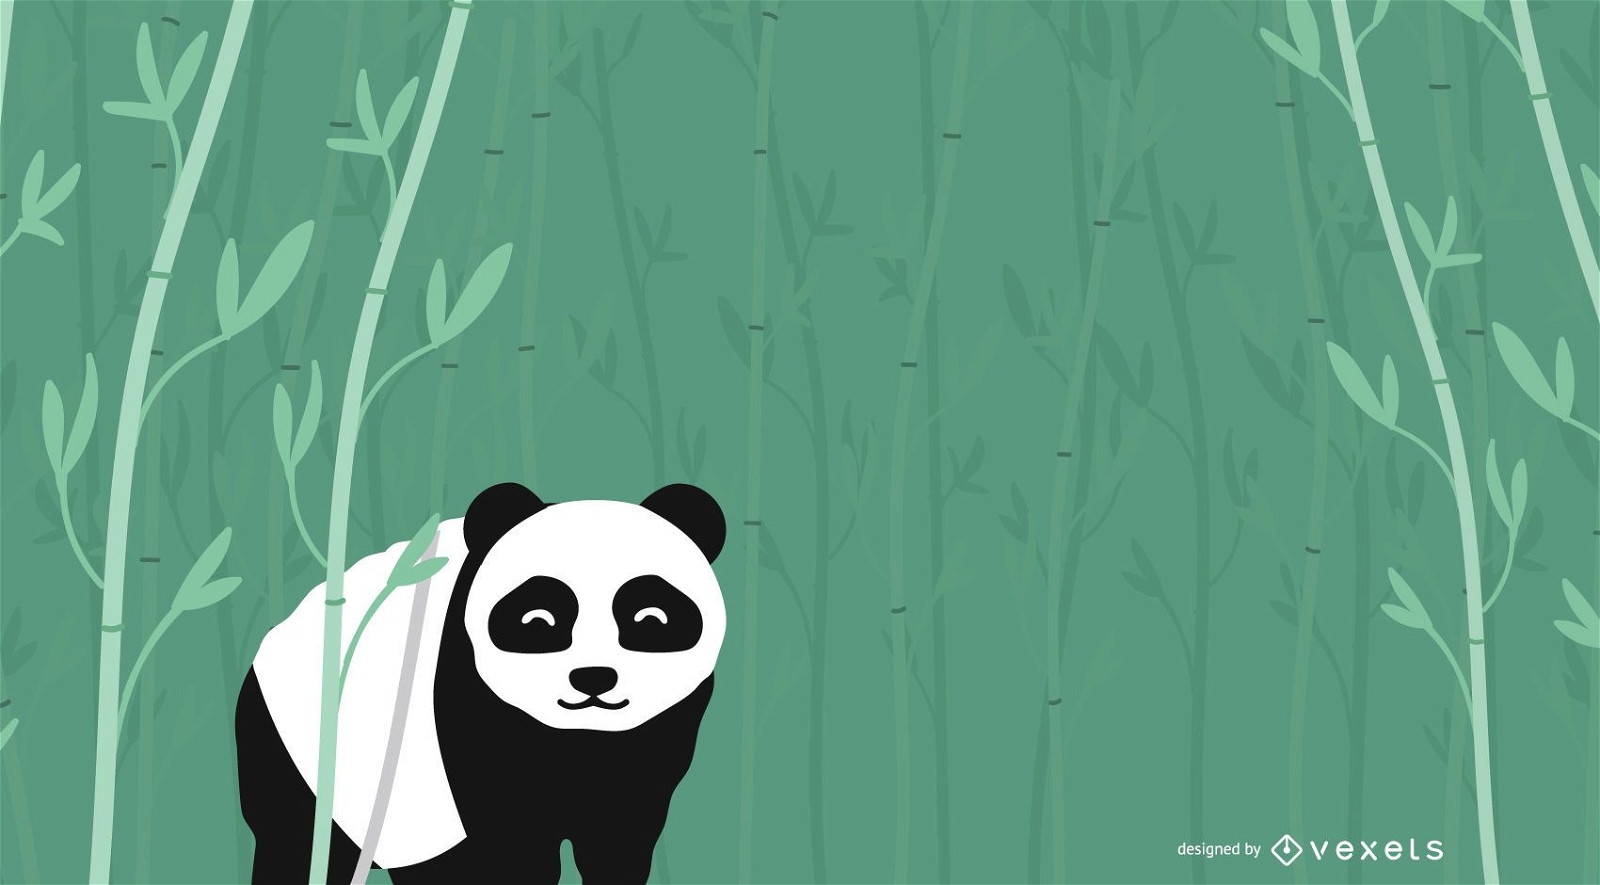 Floresta De Bambu Do Fundo Na Noite Ilustração do Vetor